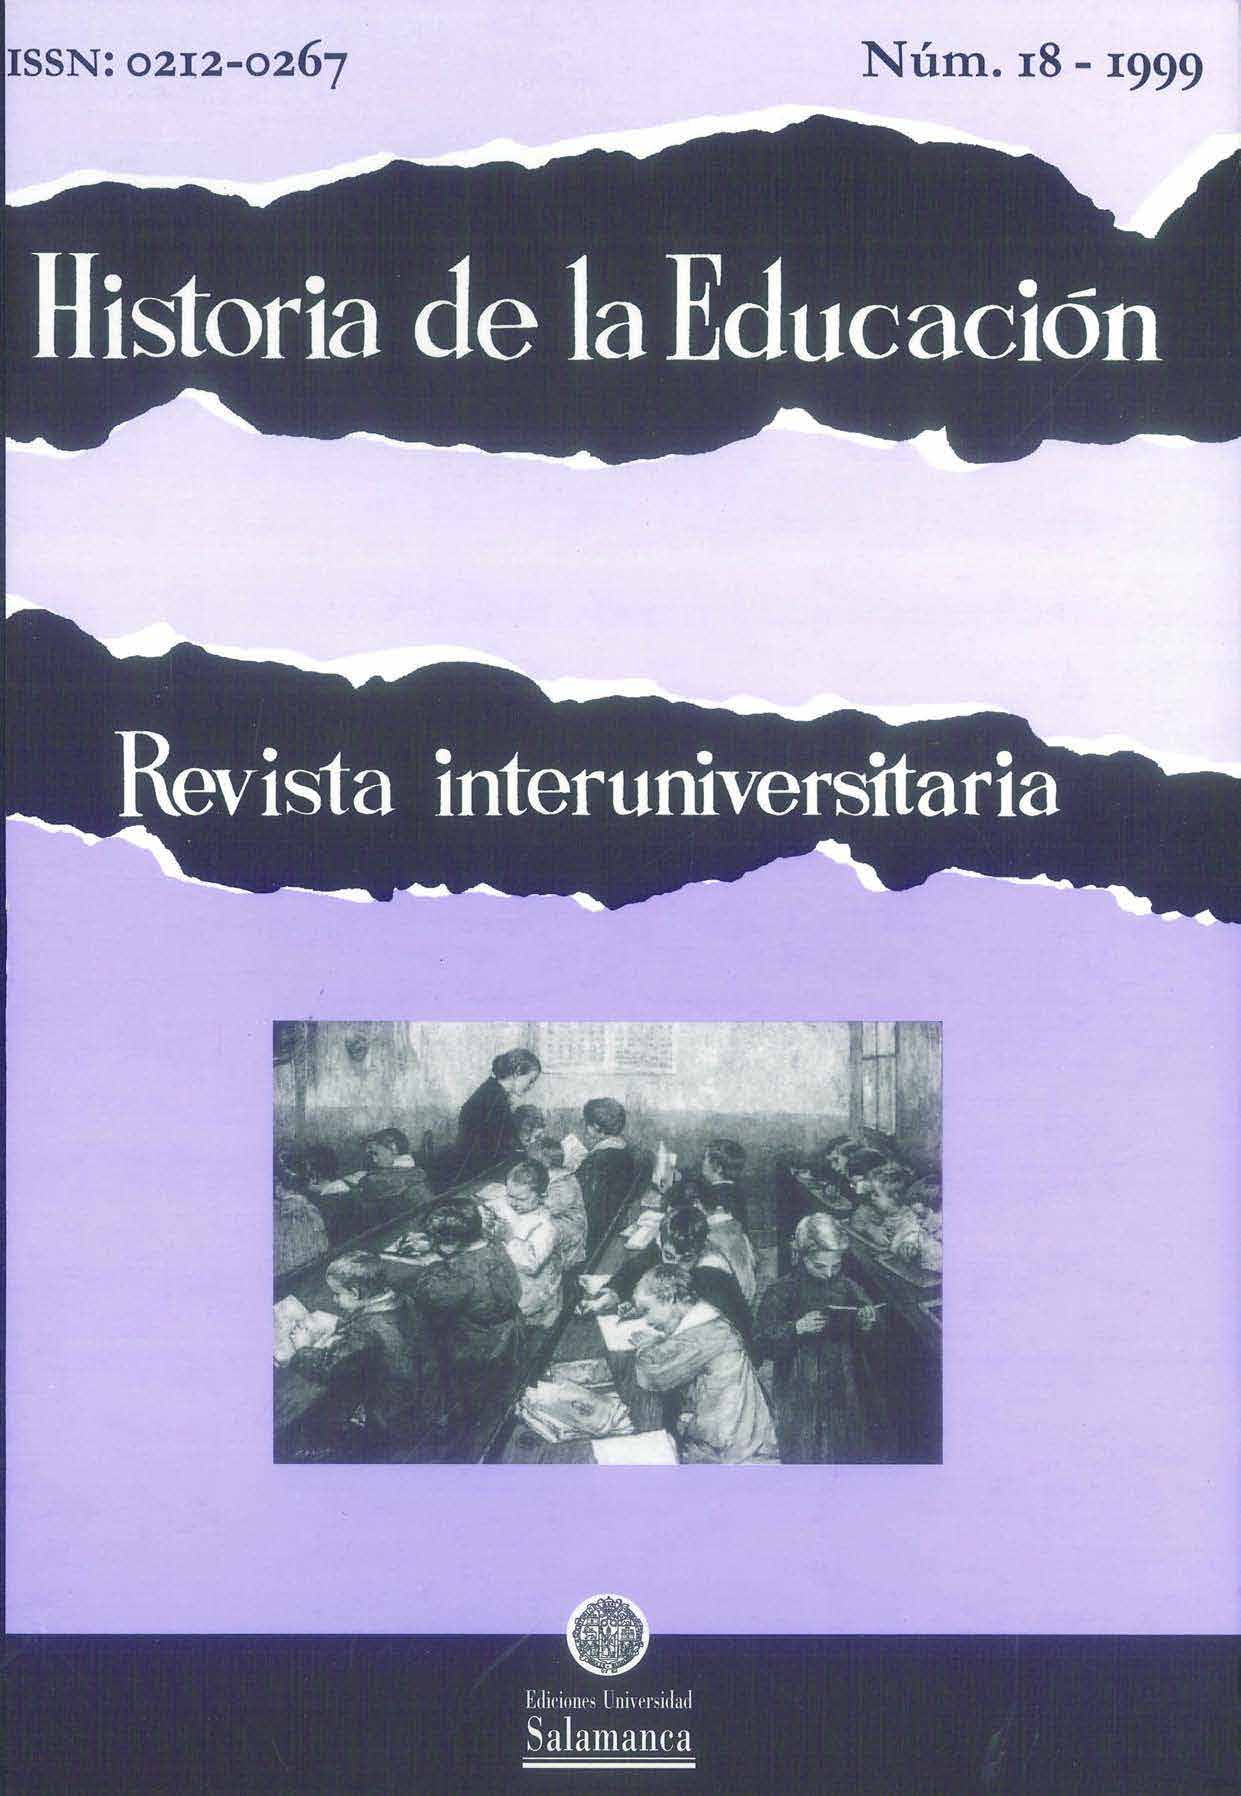                         Ver Vol. 18 (1999): Historia de la educación social
                    